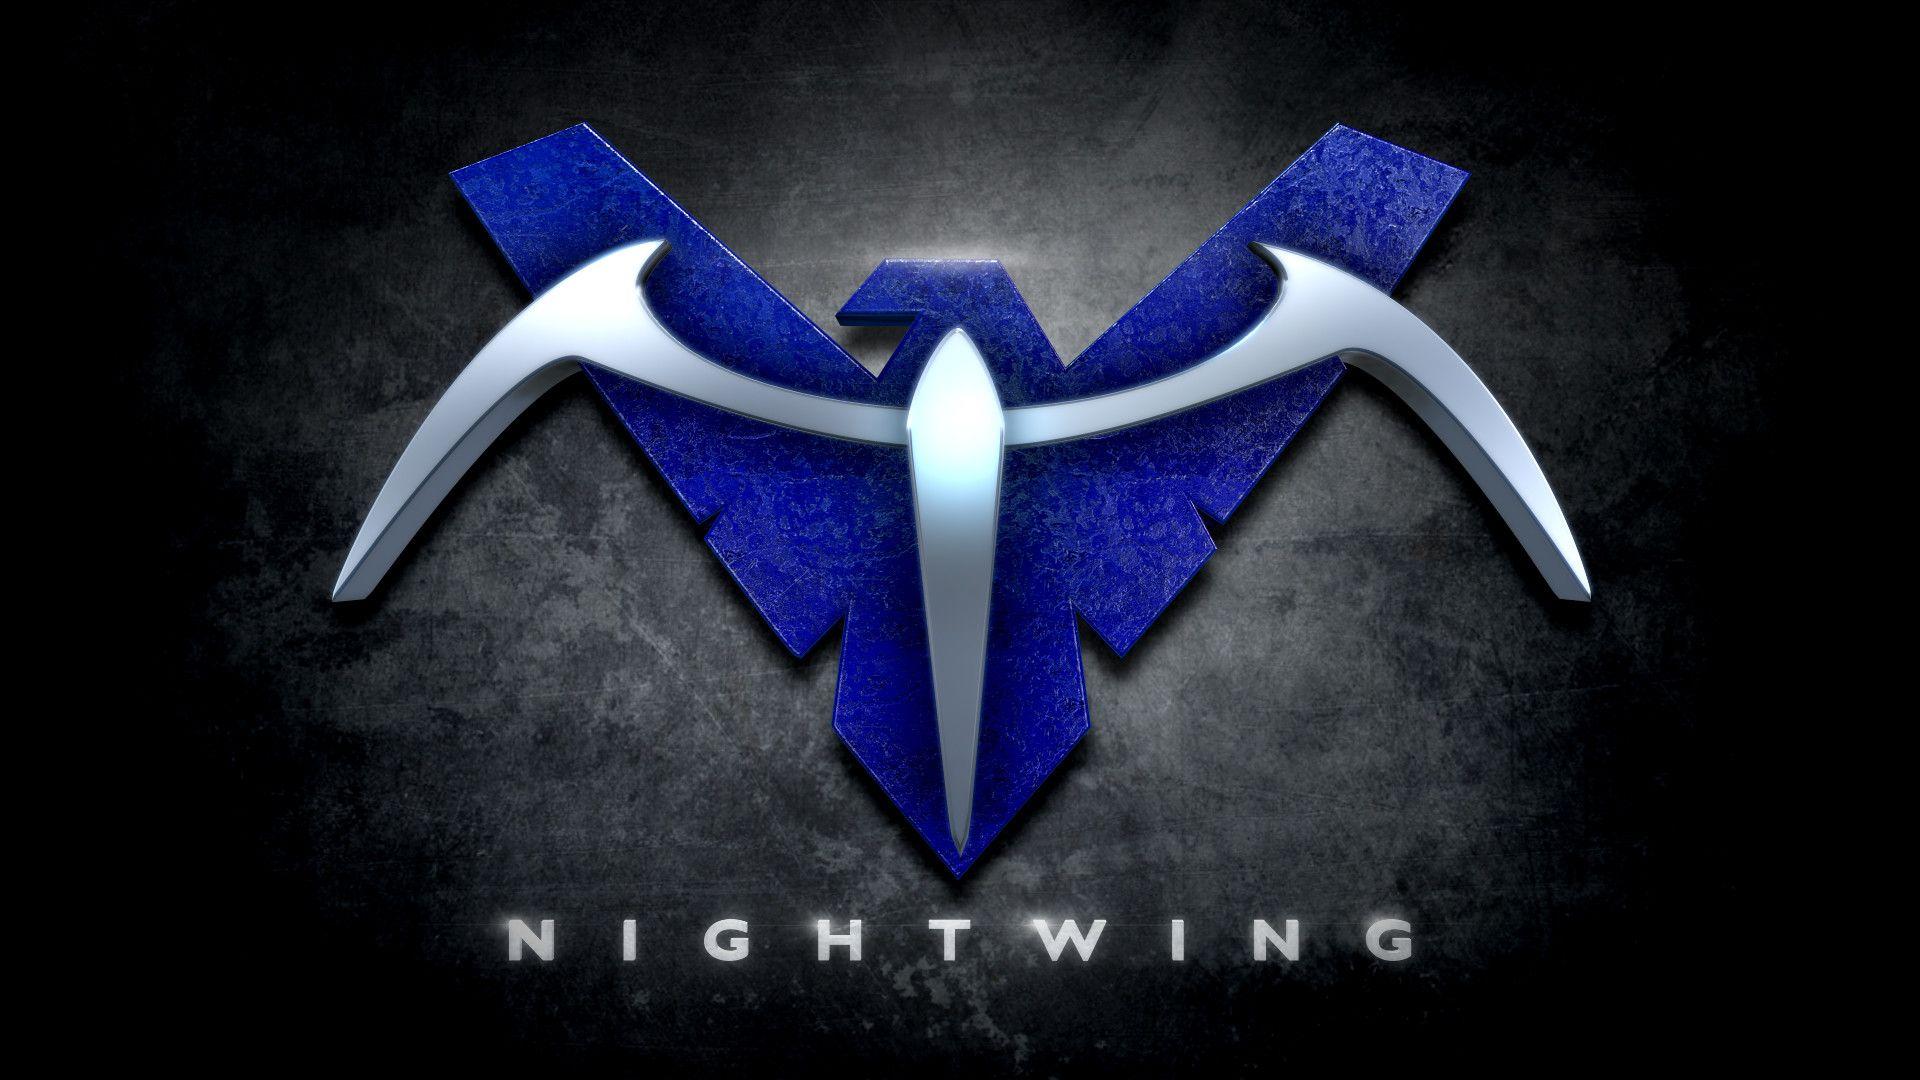 Nightwing Logo - Nightwing Logo Wallpaper